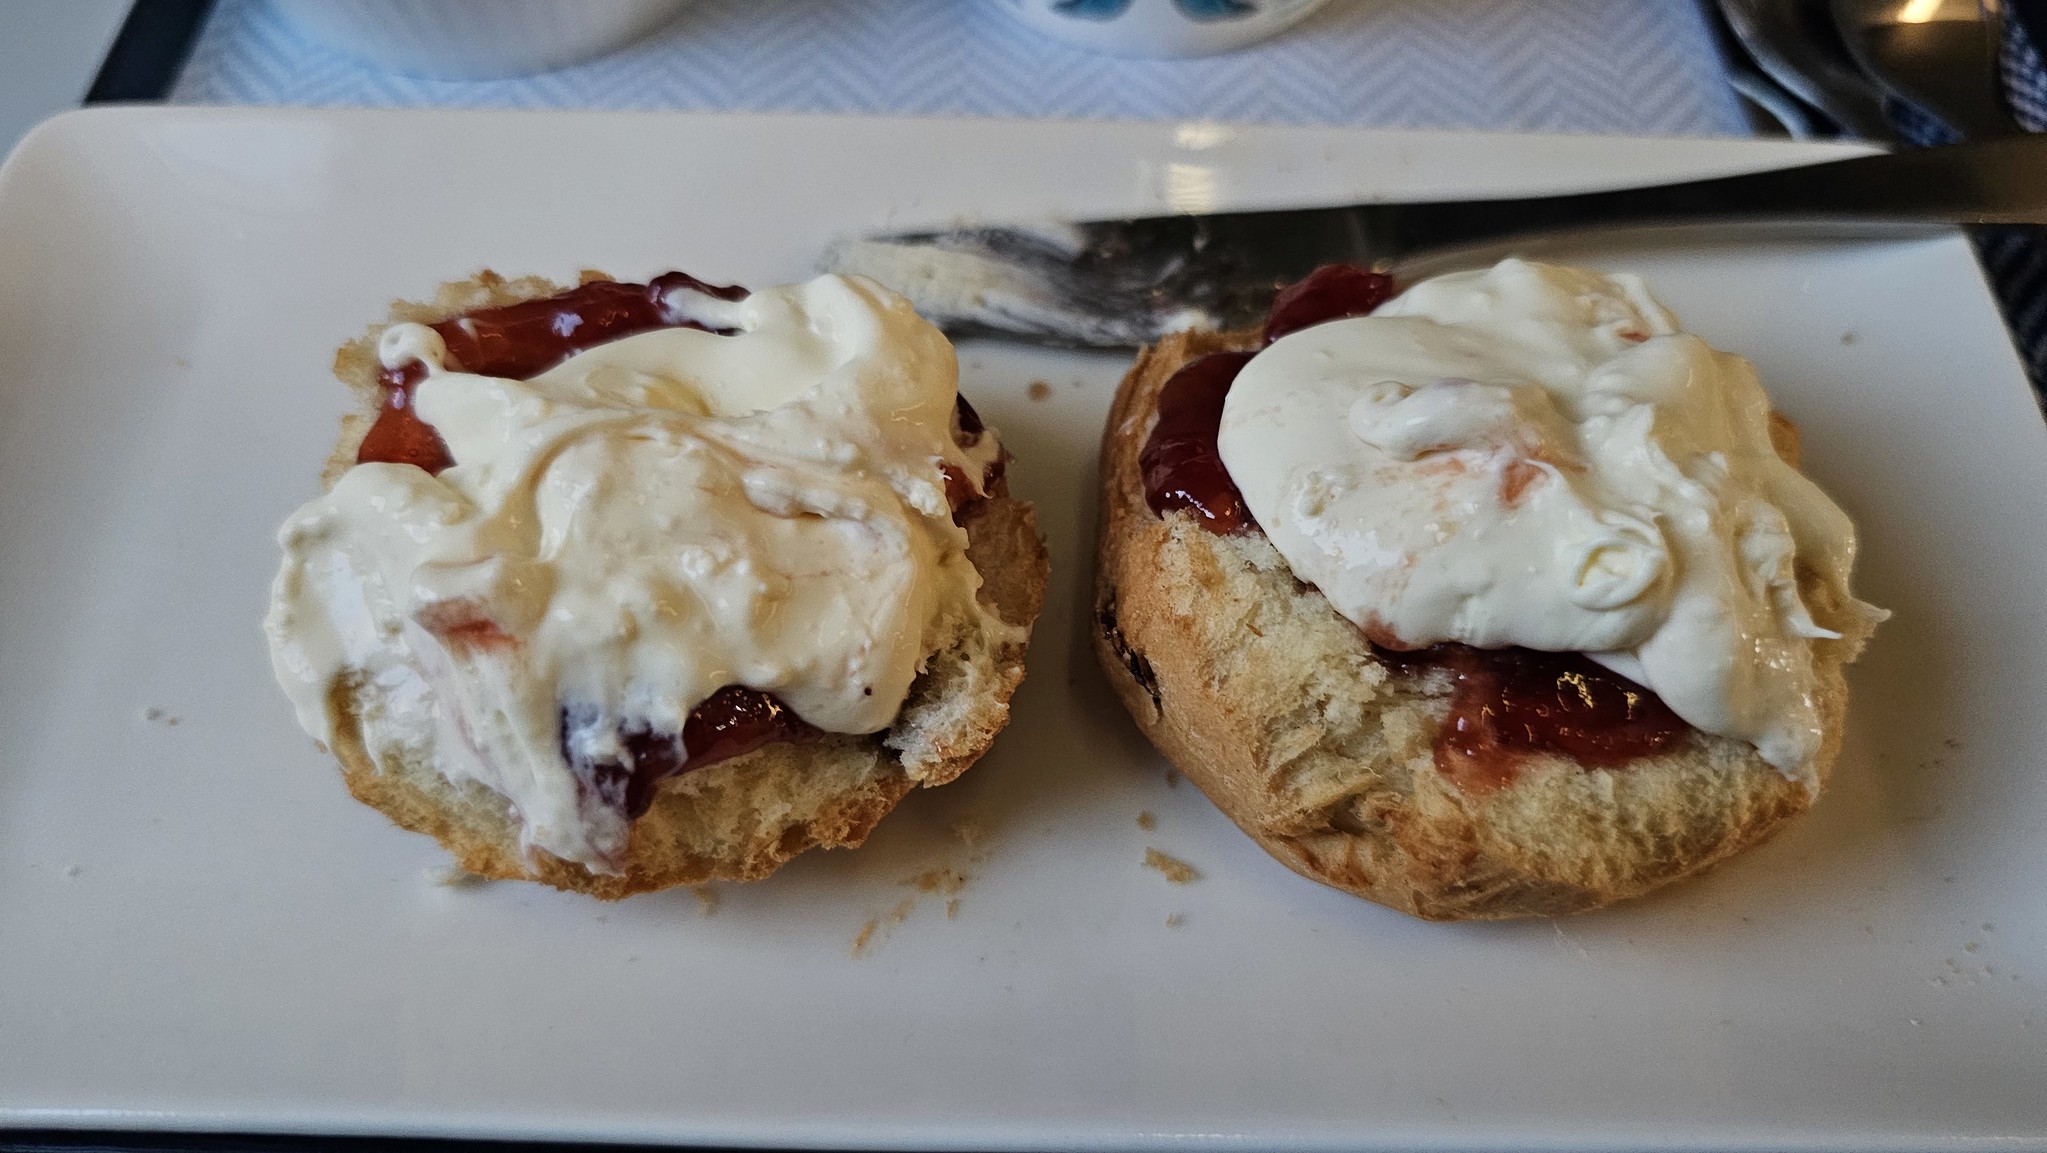 Warm scones, jam and cream - lovely!